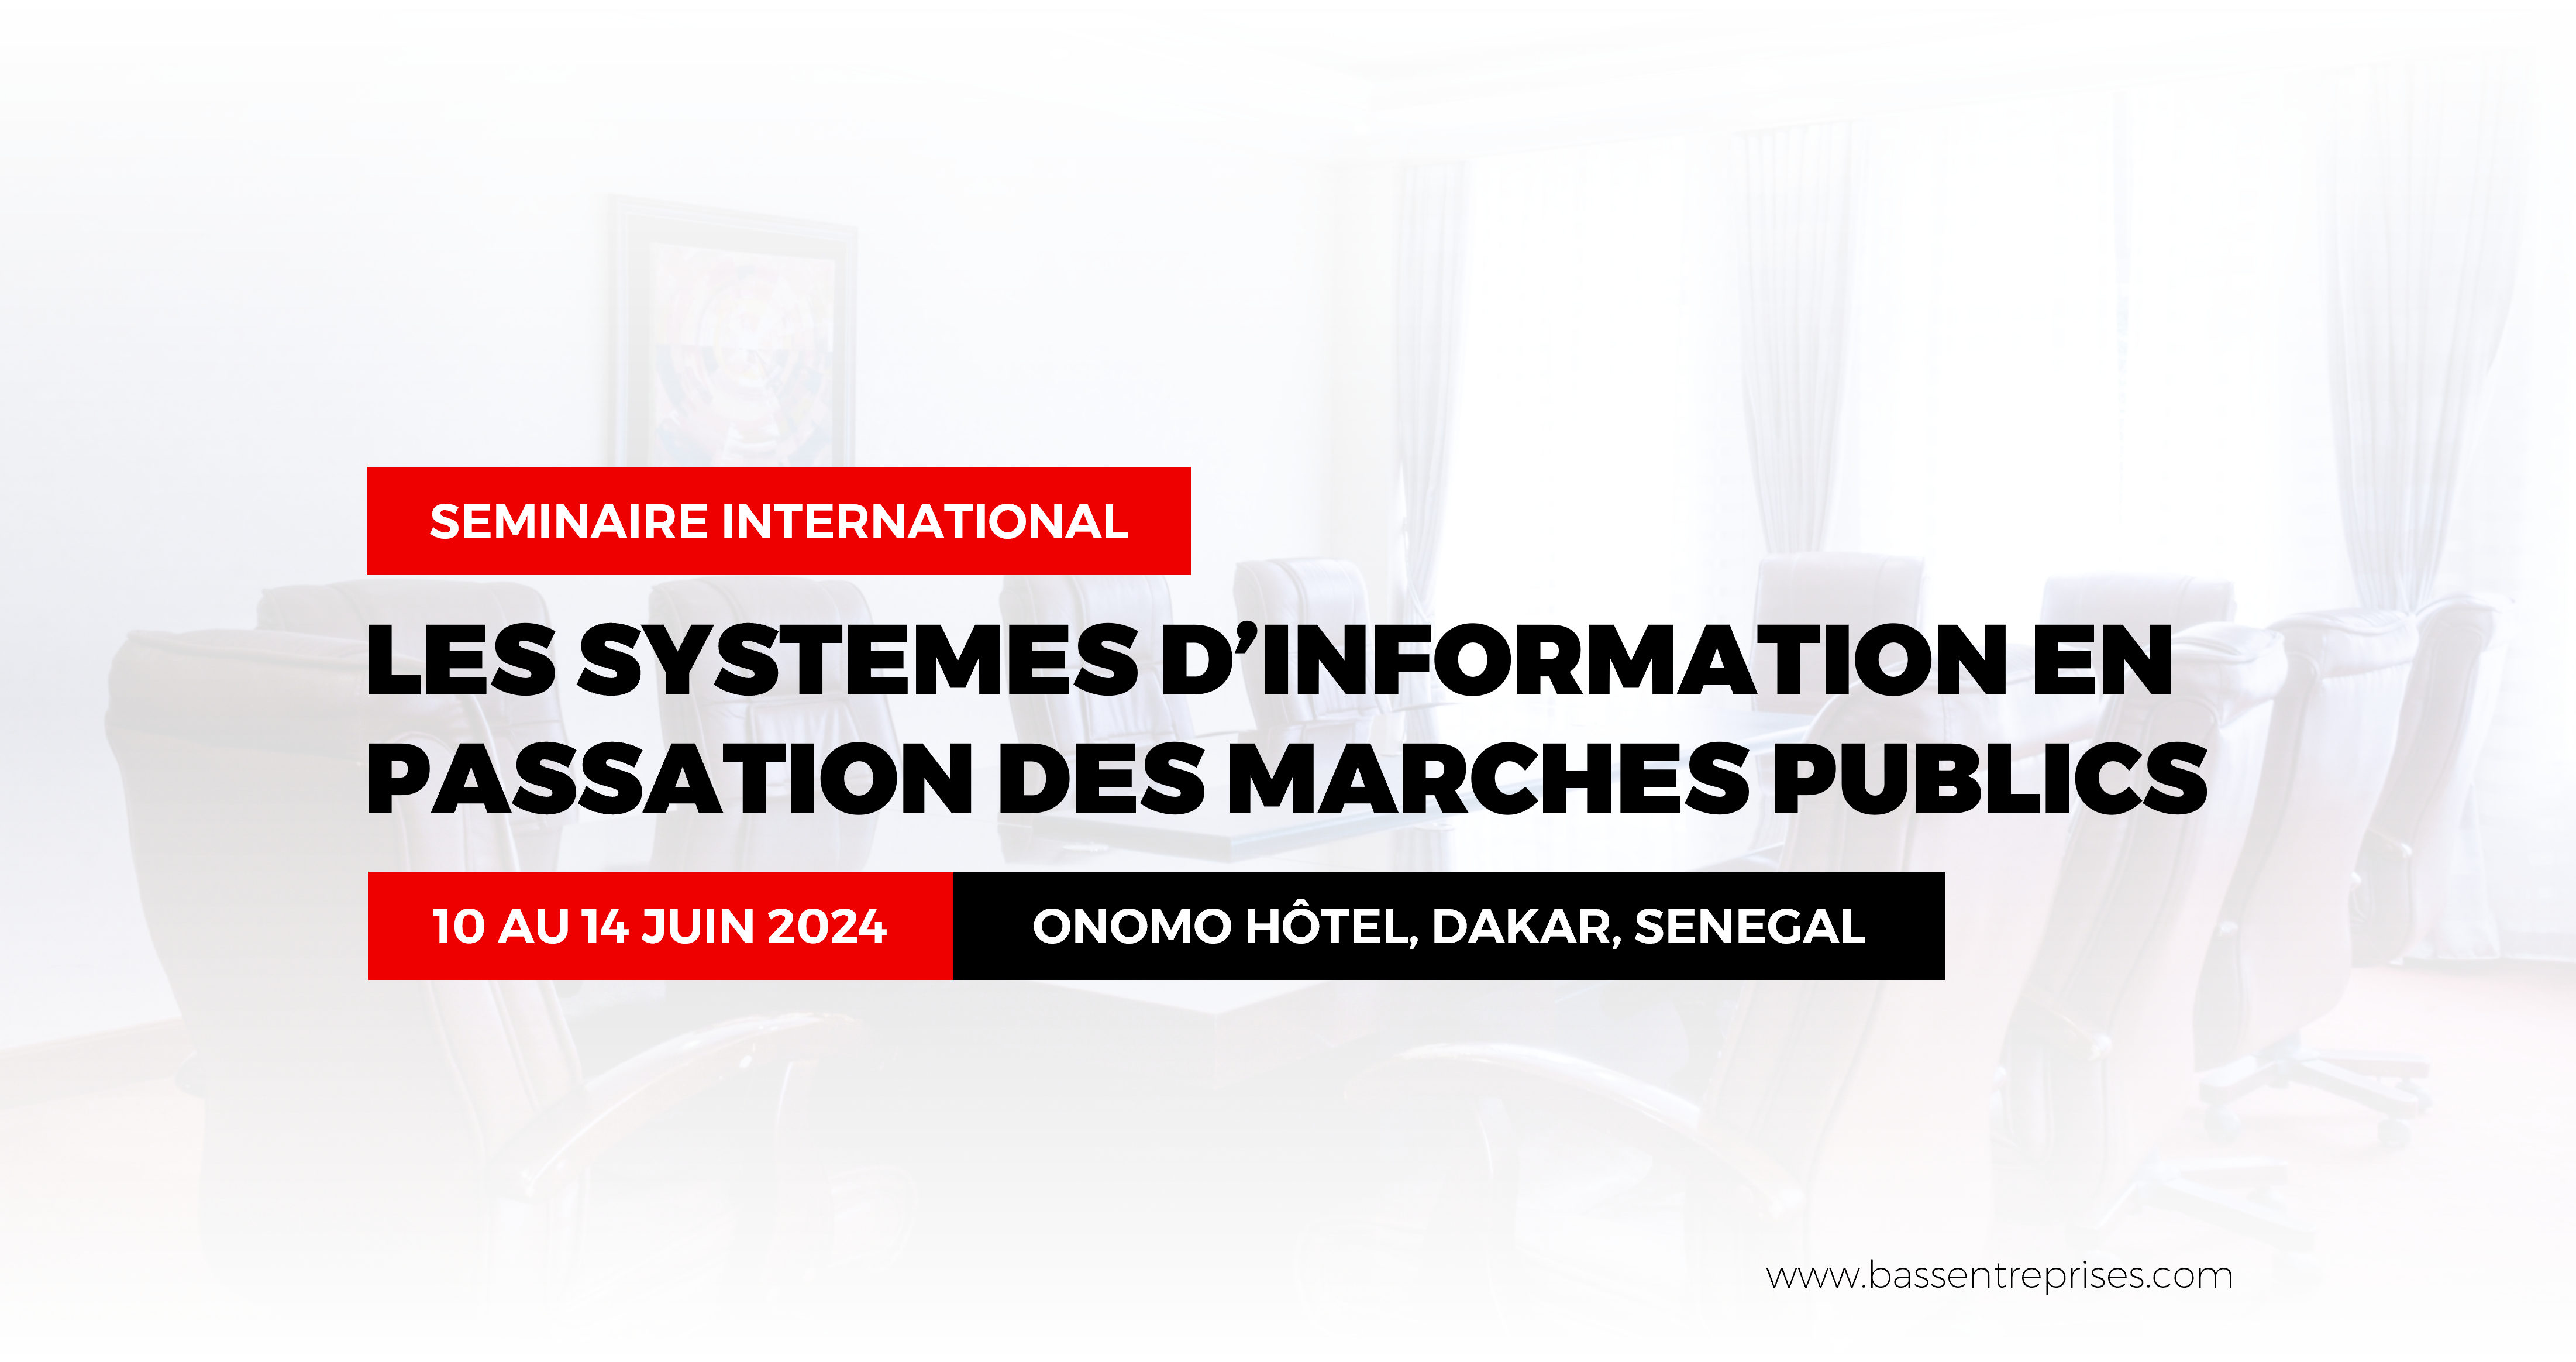 LES SYSTEMES D’INFORMATION EN PASSATION DES MARCHES PUBLICS